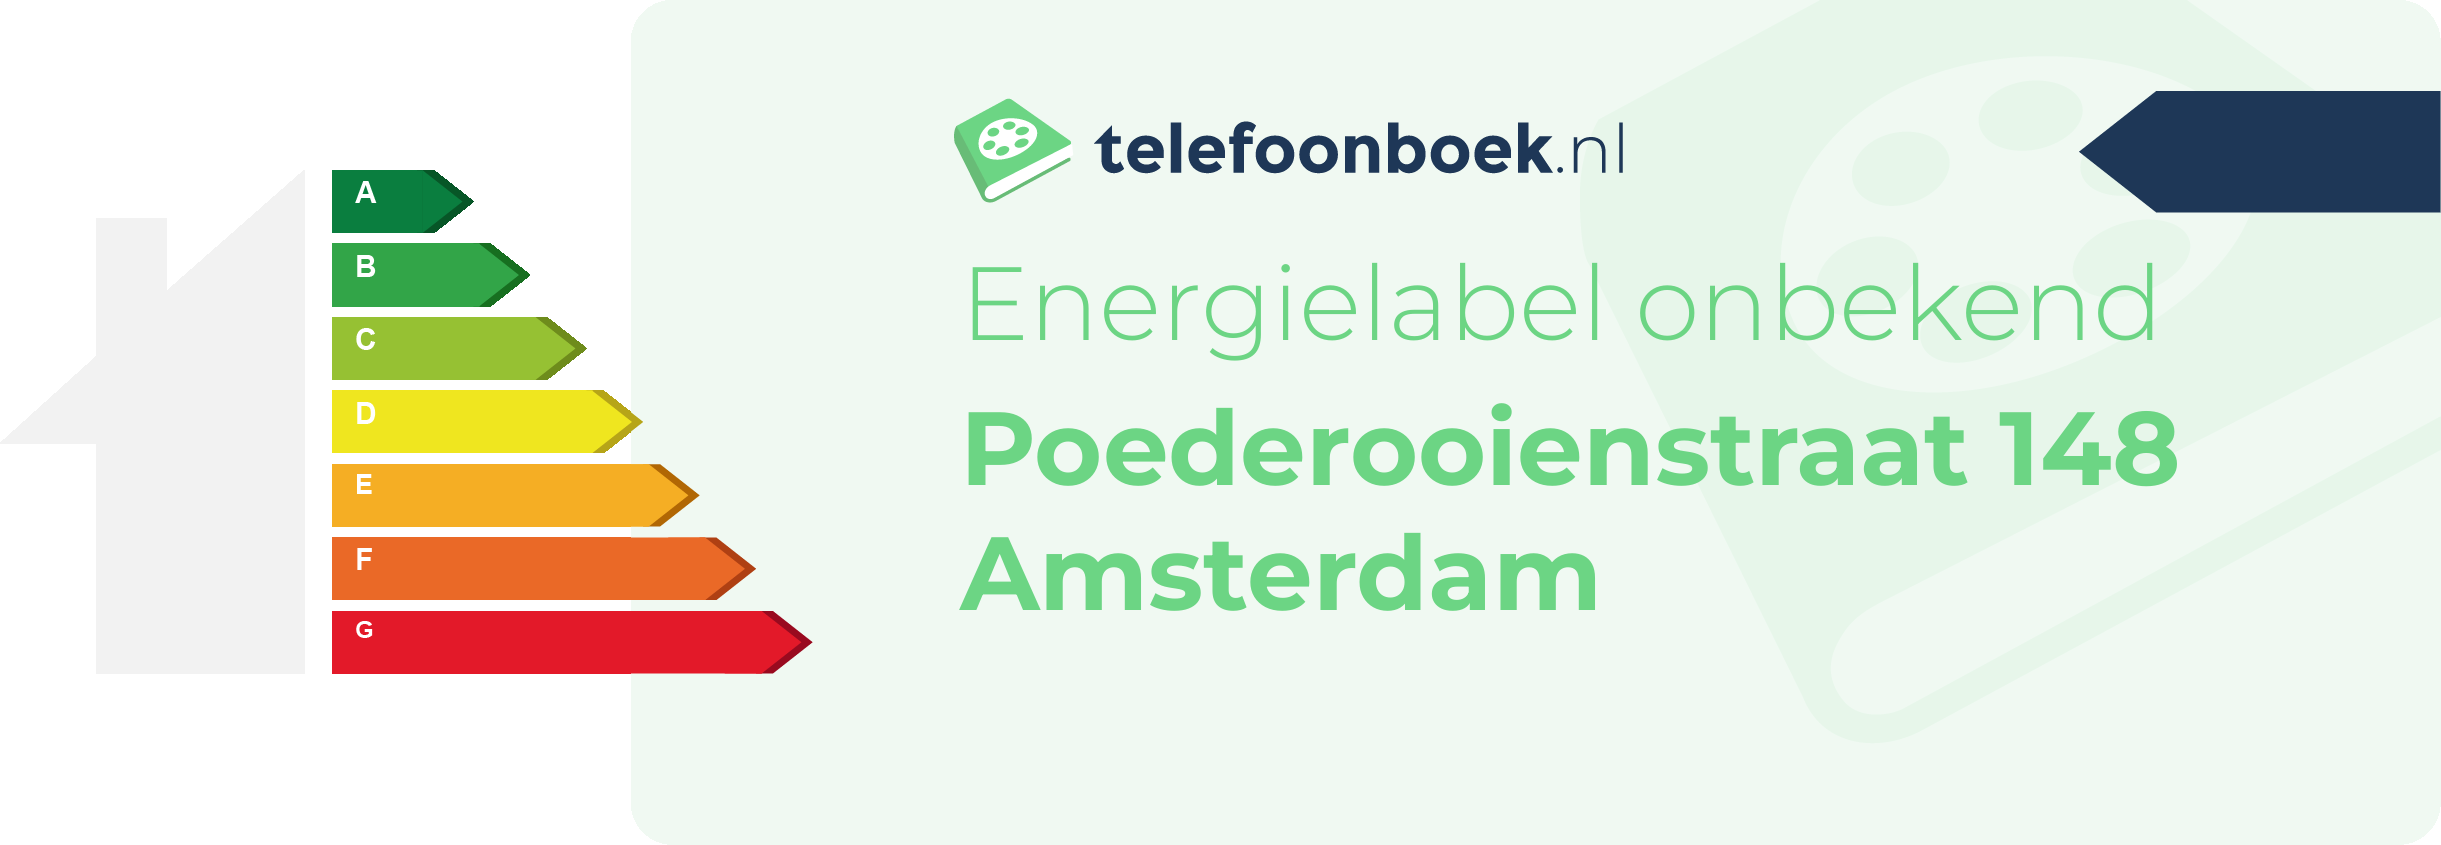 Energielabel Poederooienstraat 148 Amsterdam